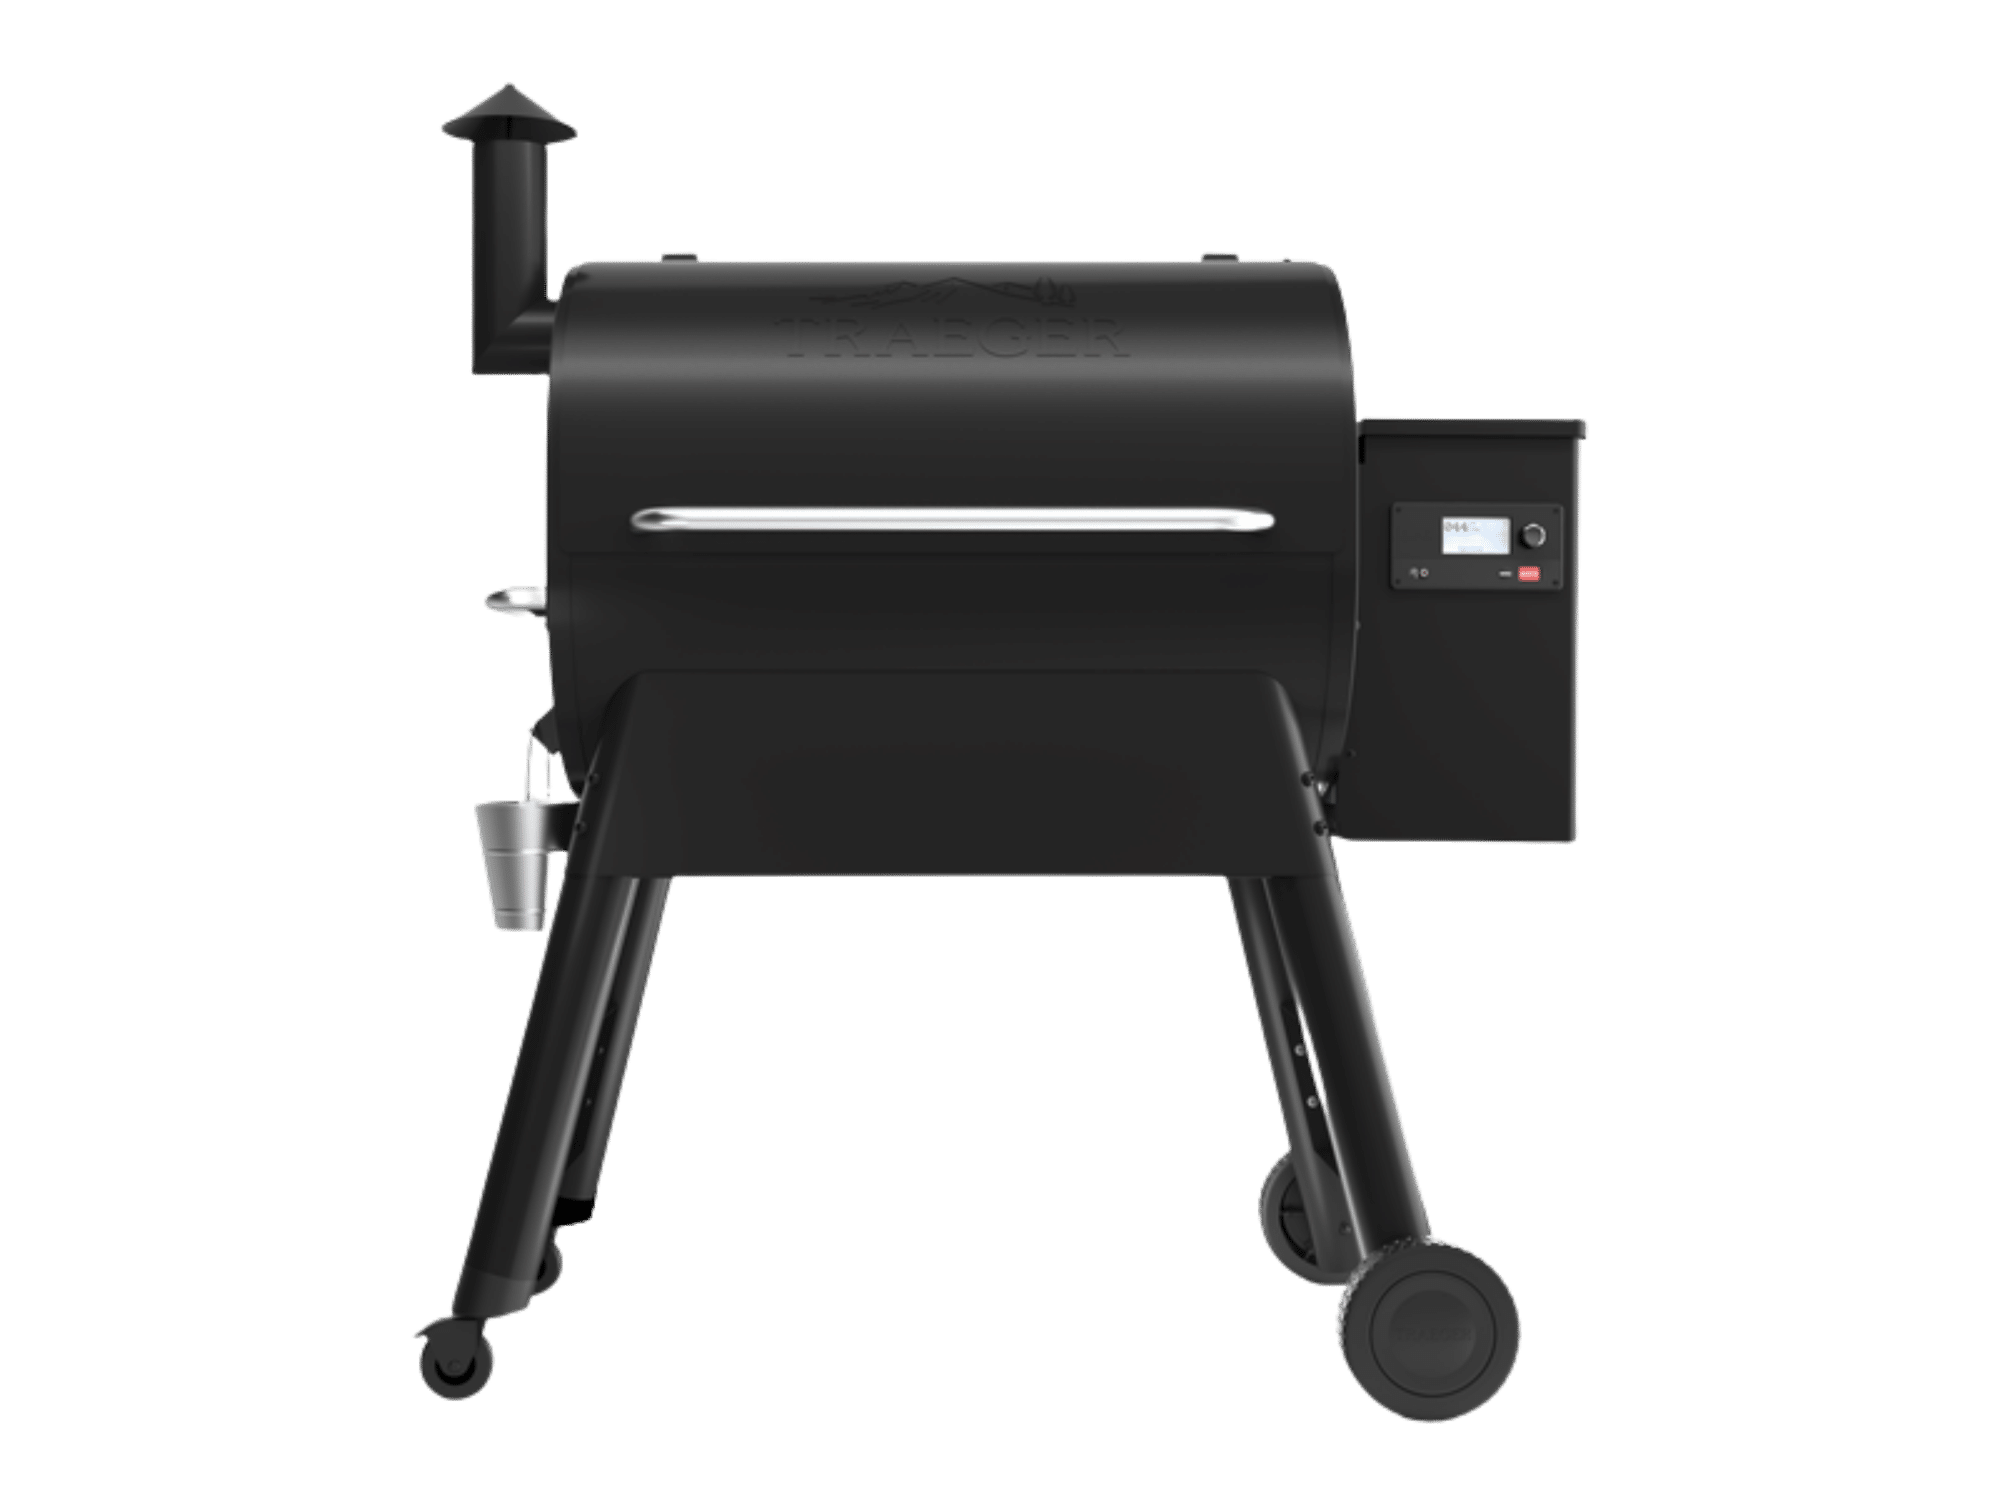 מעשנת בשר וגריל בשר דגם פרו 780 – Traeger Pro 780